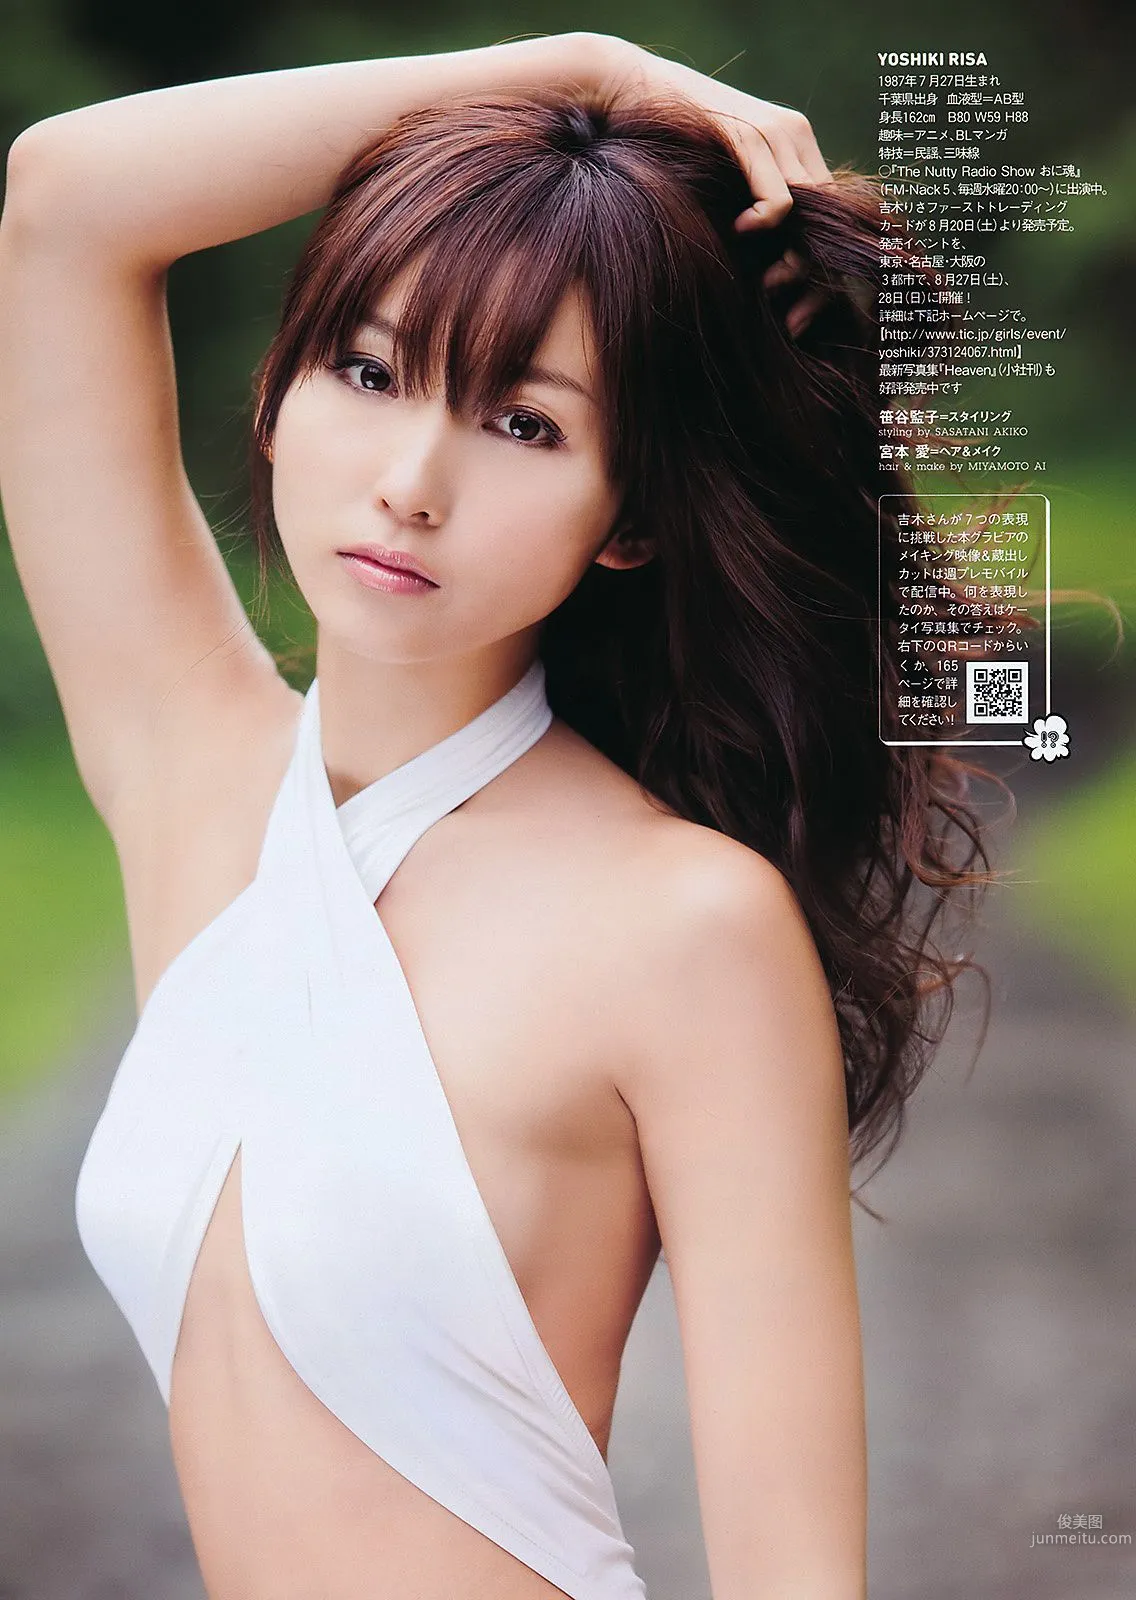 AKB48 にわみきほ 足立梨花 田中みな実 吹石一恵 吉木りさ [Weekly Playboy] 2011年No.34-35 写真杂志33